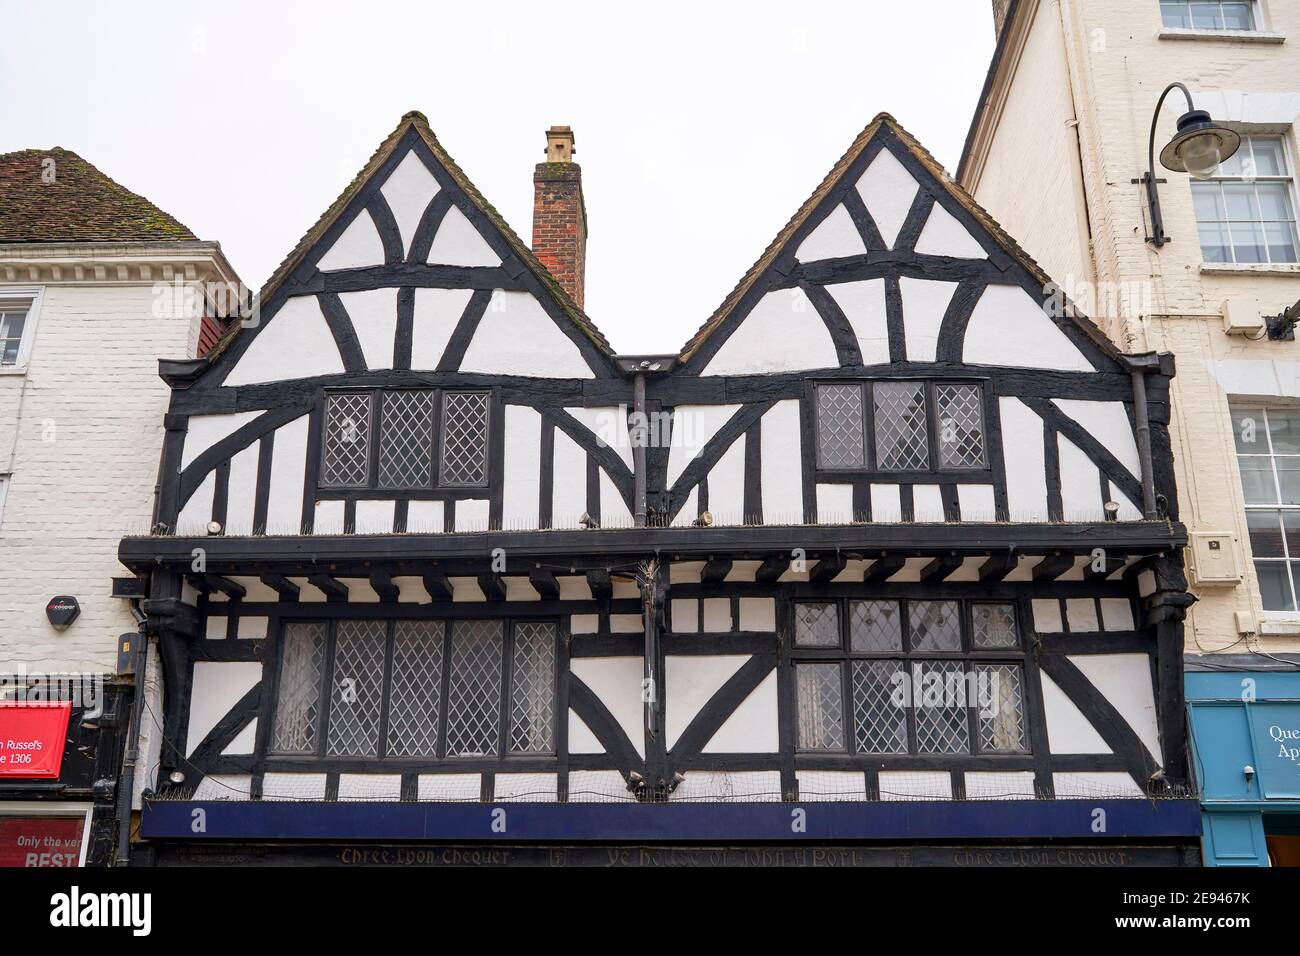 Bâtiment à colombages de style Tudor avec fenêtres au plomb Banque D'Images